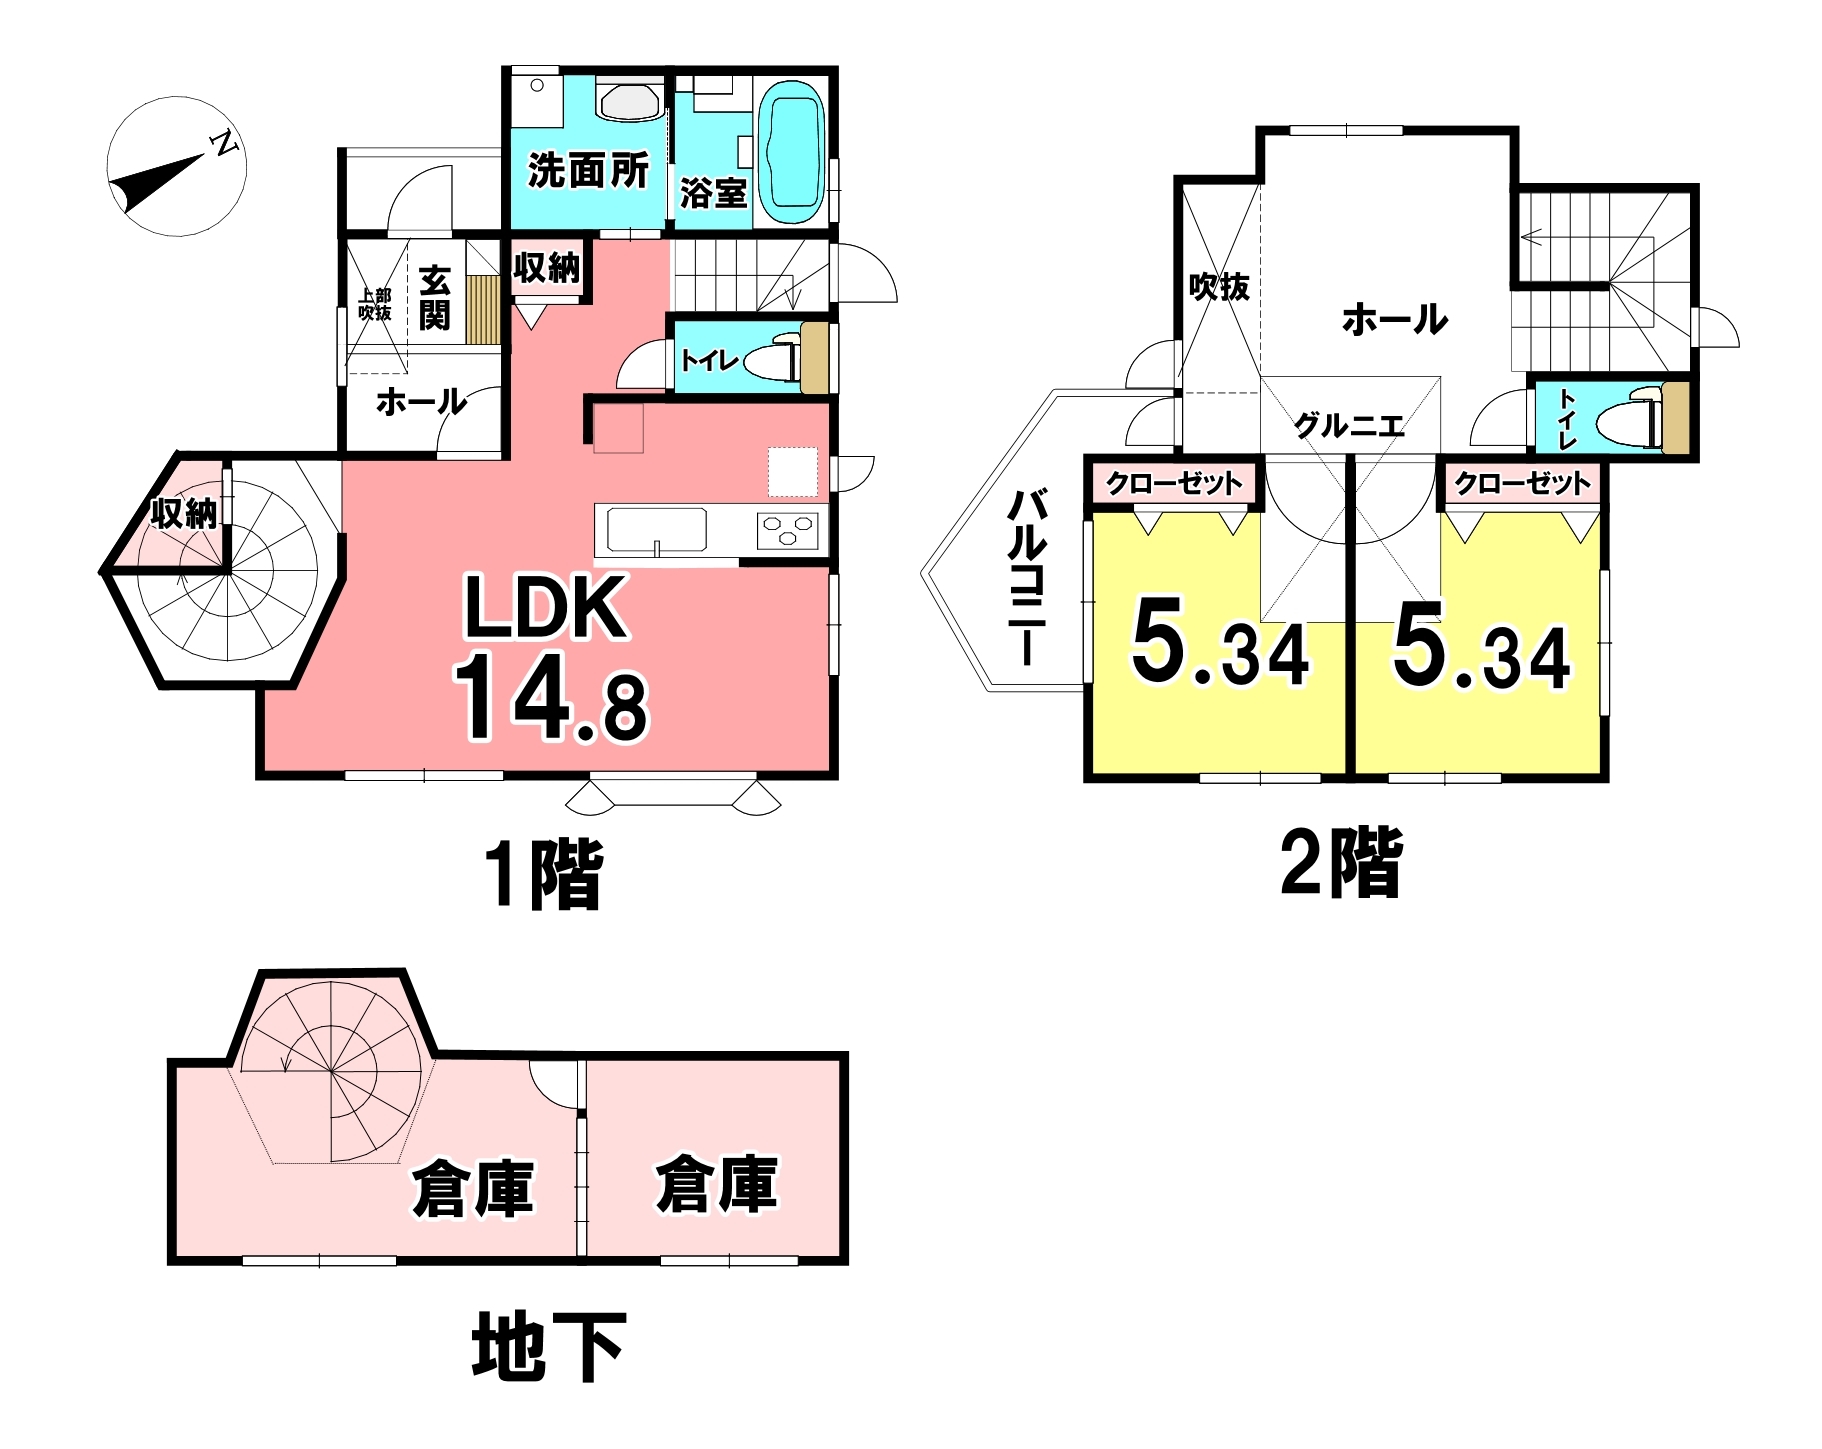 東京都町田市常盤町の中古一戸建て 2649万円 の不動産 住宅の物件詳細 ハウスドゥ Com スマートフォンサイト